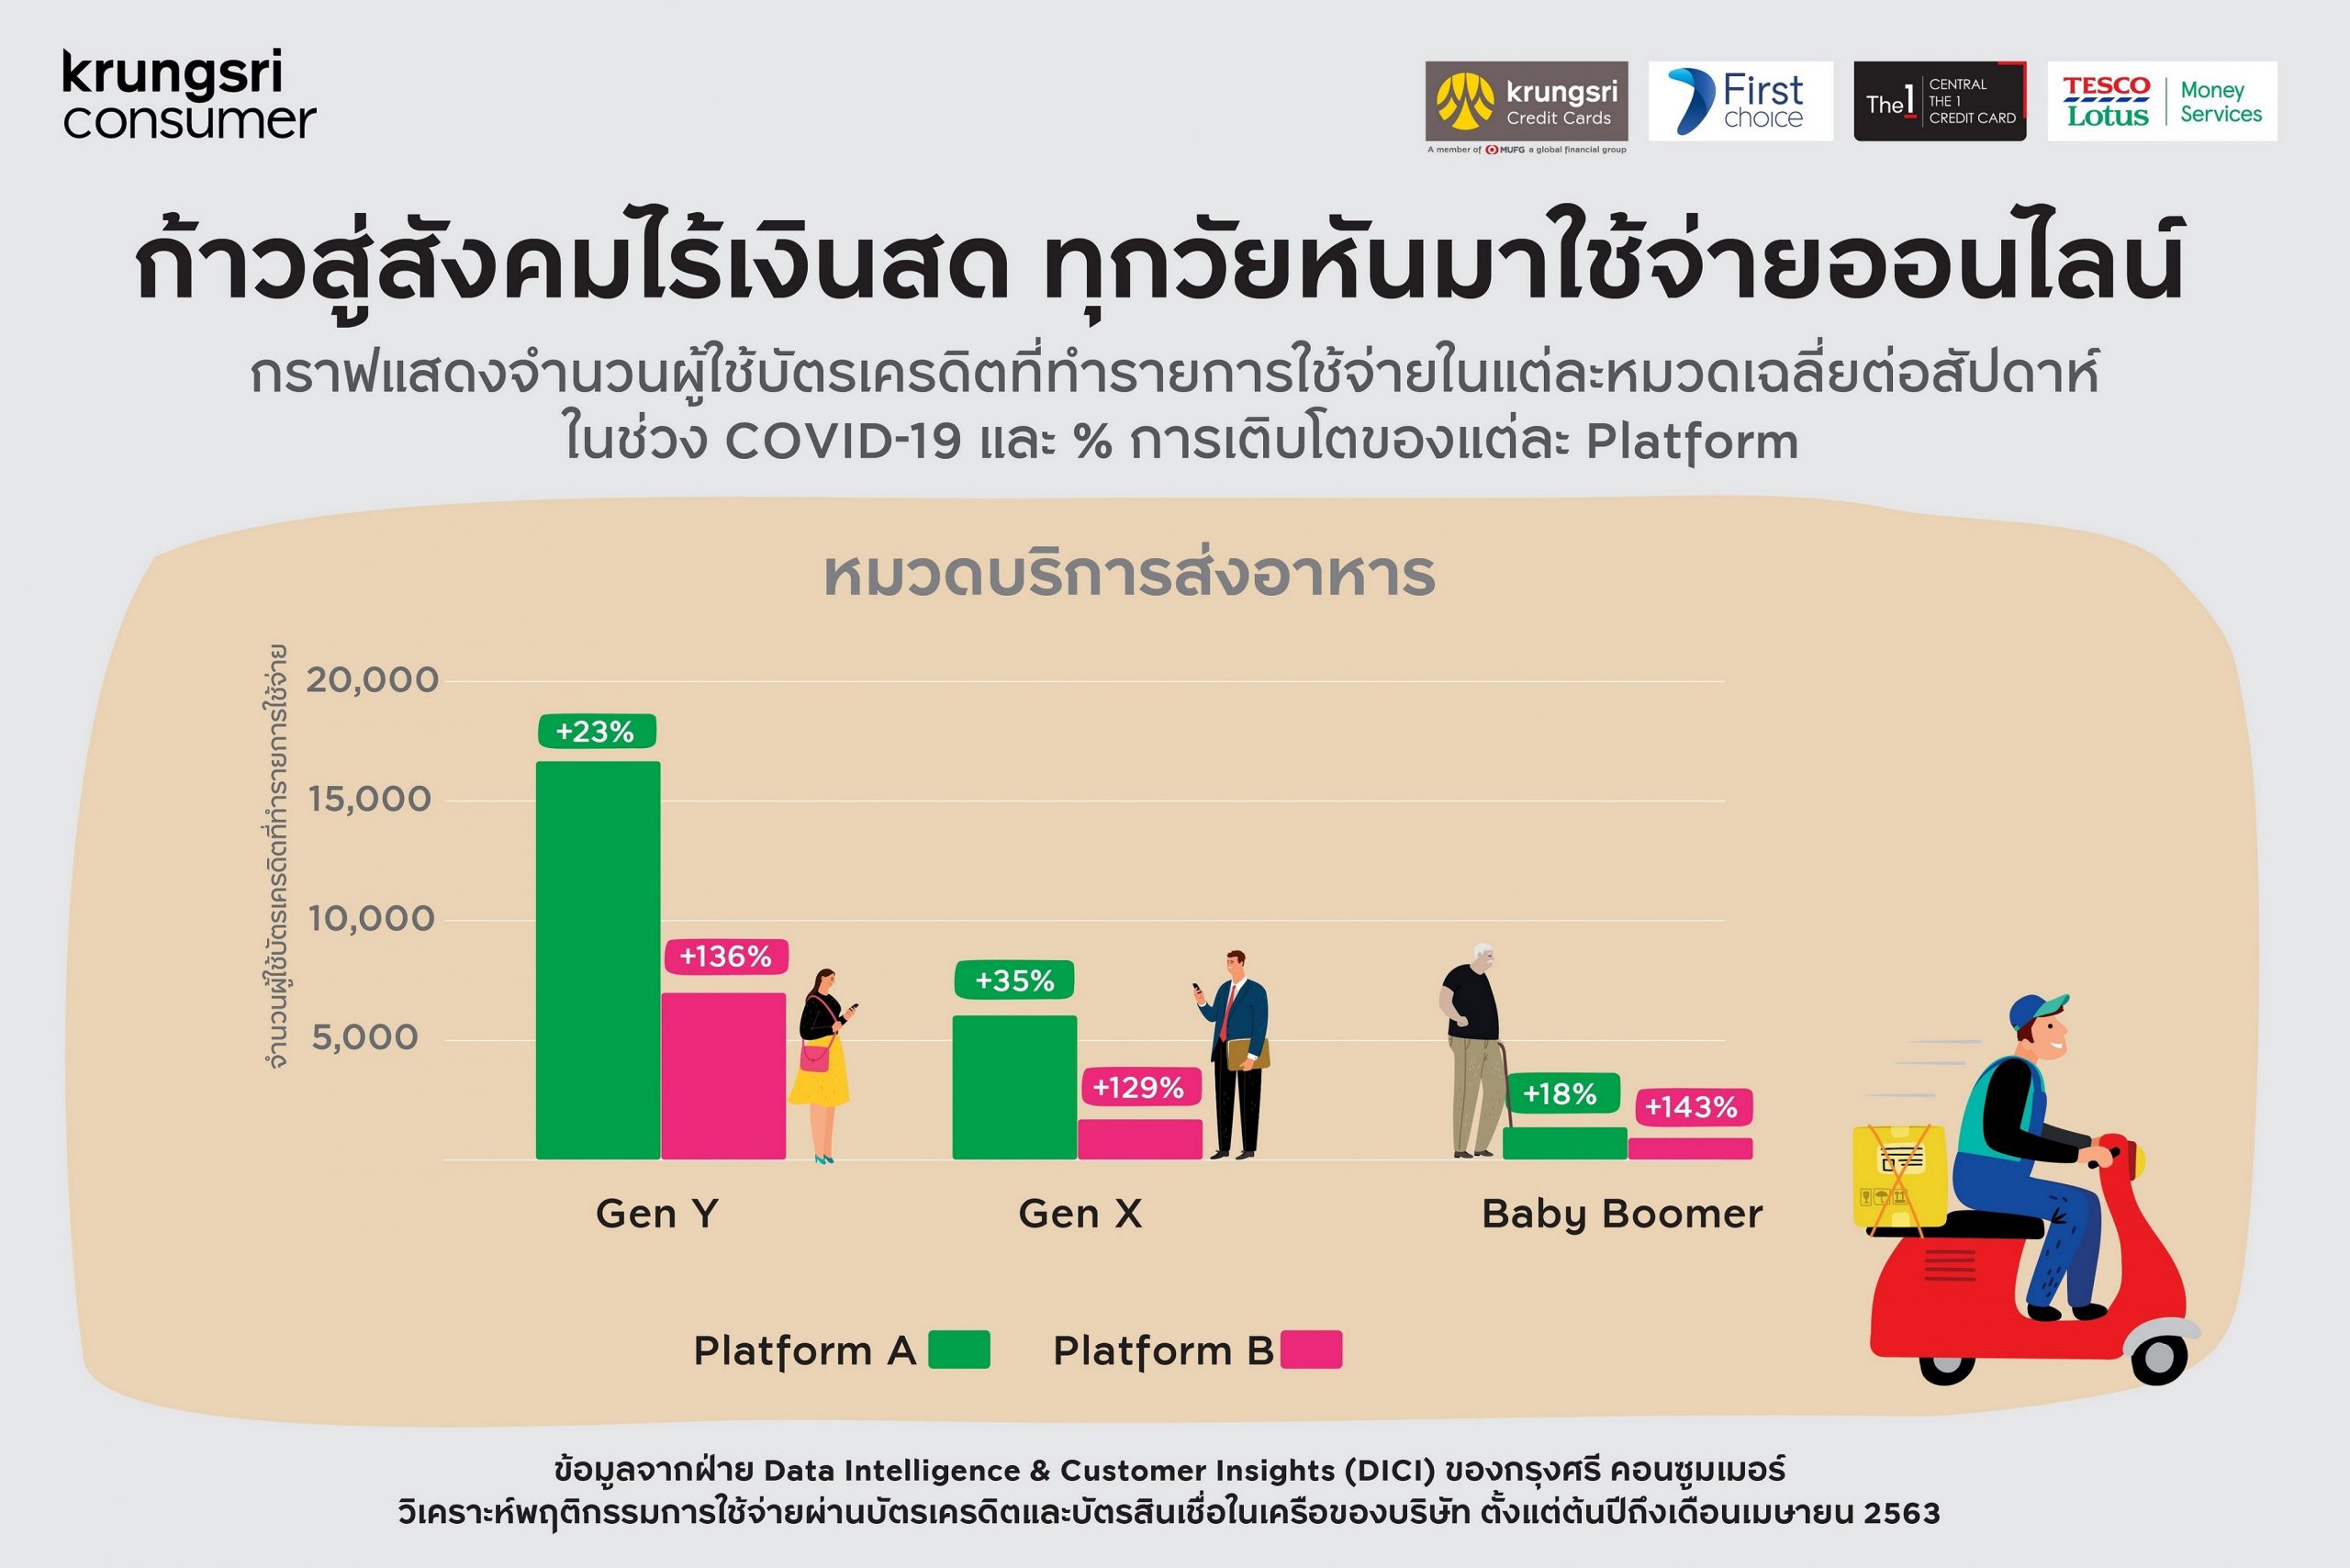 กรุงศรี คอนซูมเมอร์ เผย 5 เทรนด์ผู้บริโภคยุคใหม่ พฤติกรรมการใช้จ่ายผ่านบัตรชี้ ชีวิตวิถีใหม่เร่งสังคมไทยก้าวสู่สังคมไร้เงินสด